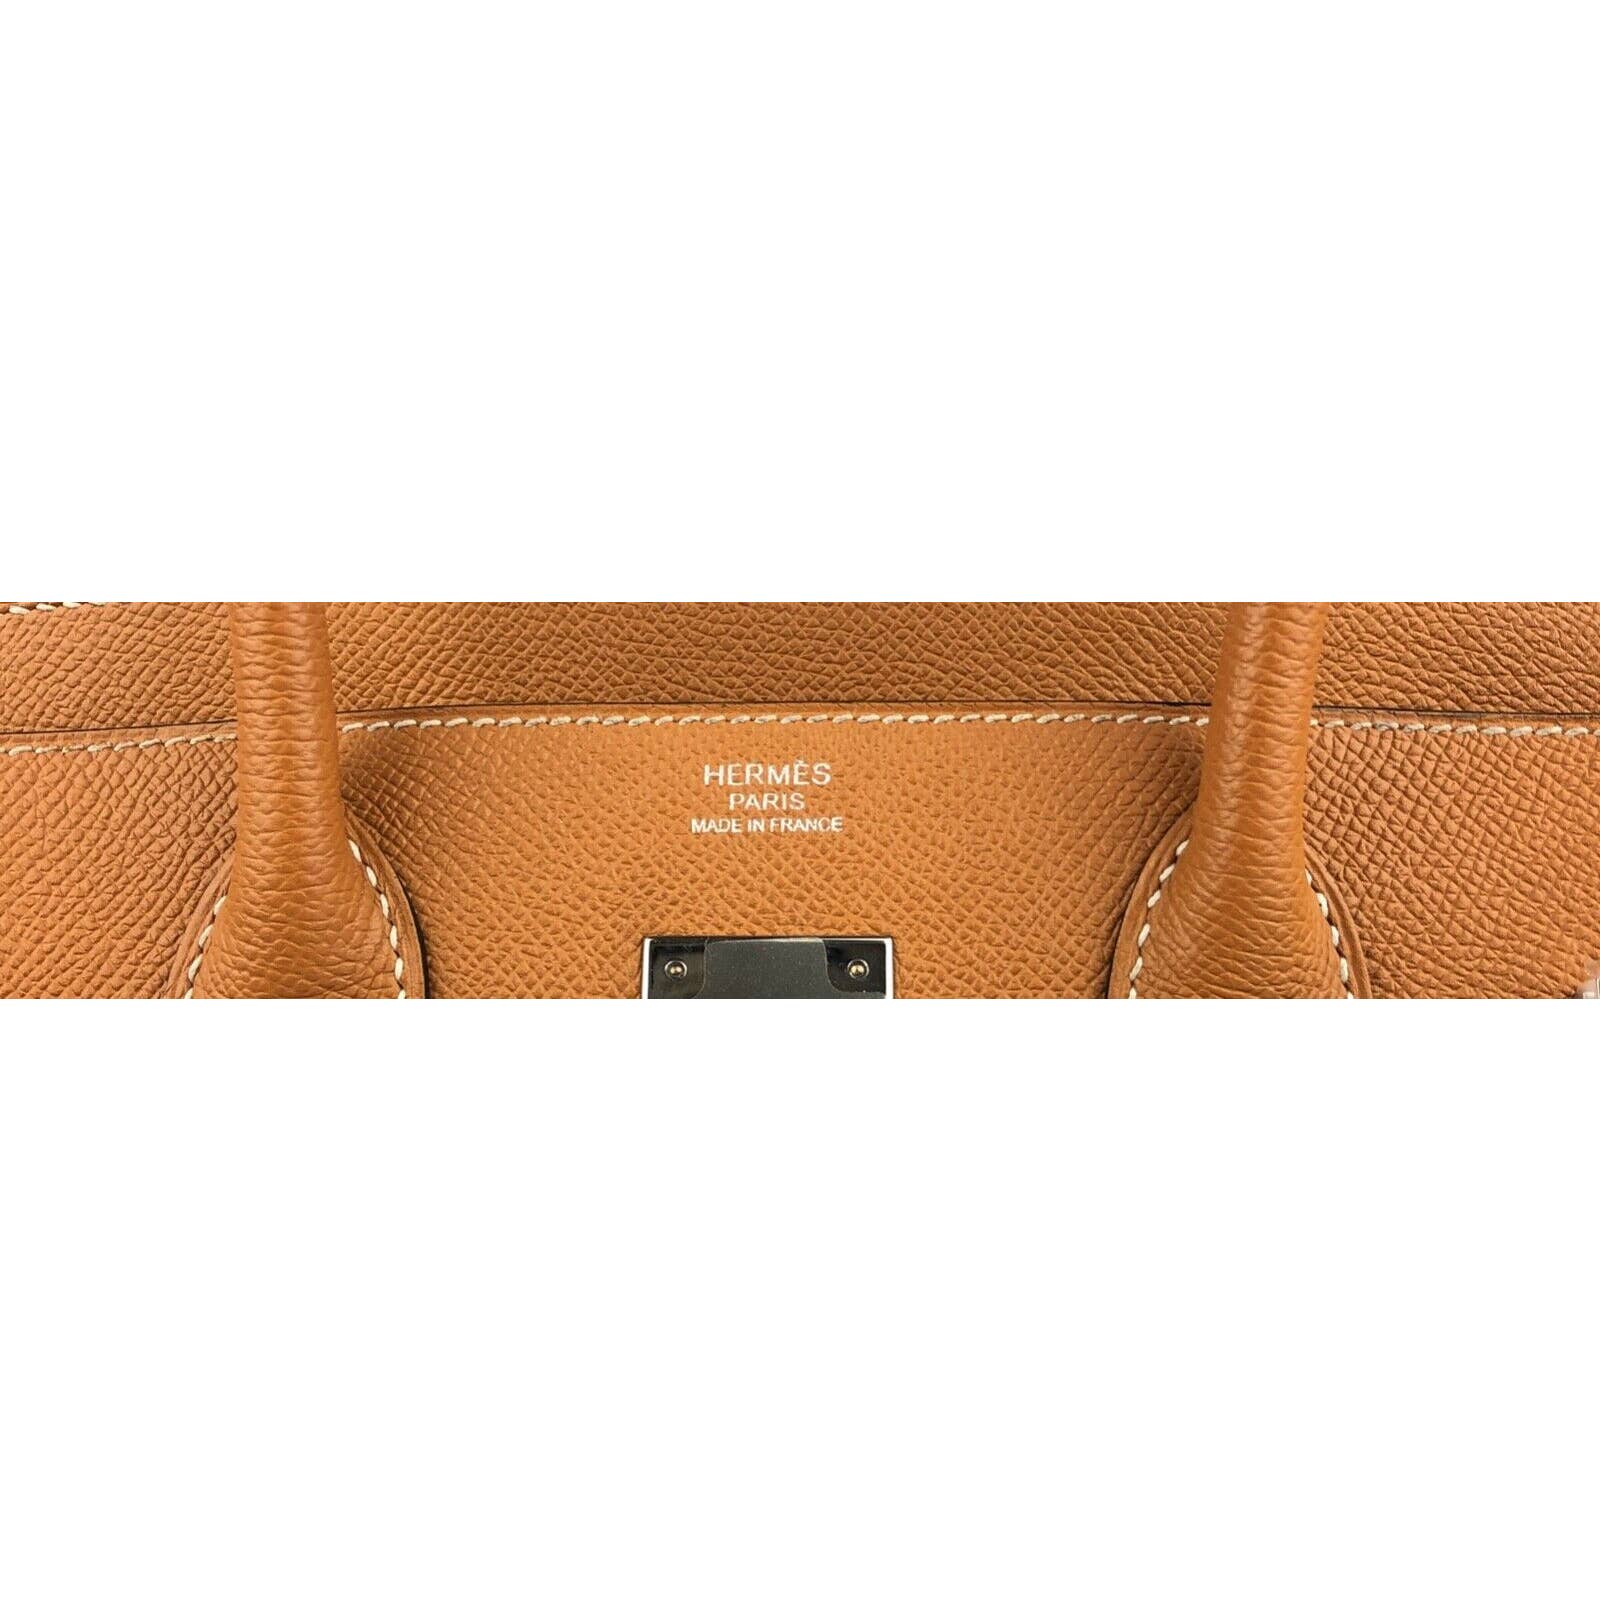 Hermès Birkin 30 Lime Epsom with Palladium Hardware - 2019, D